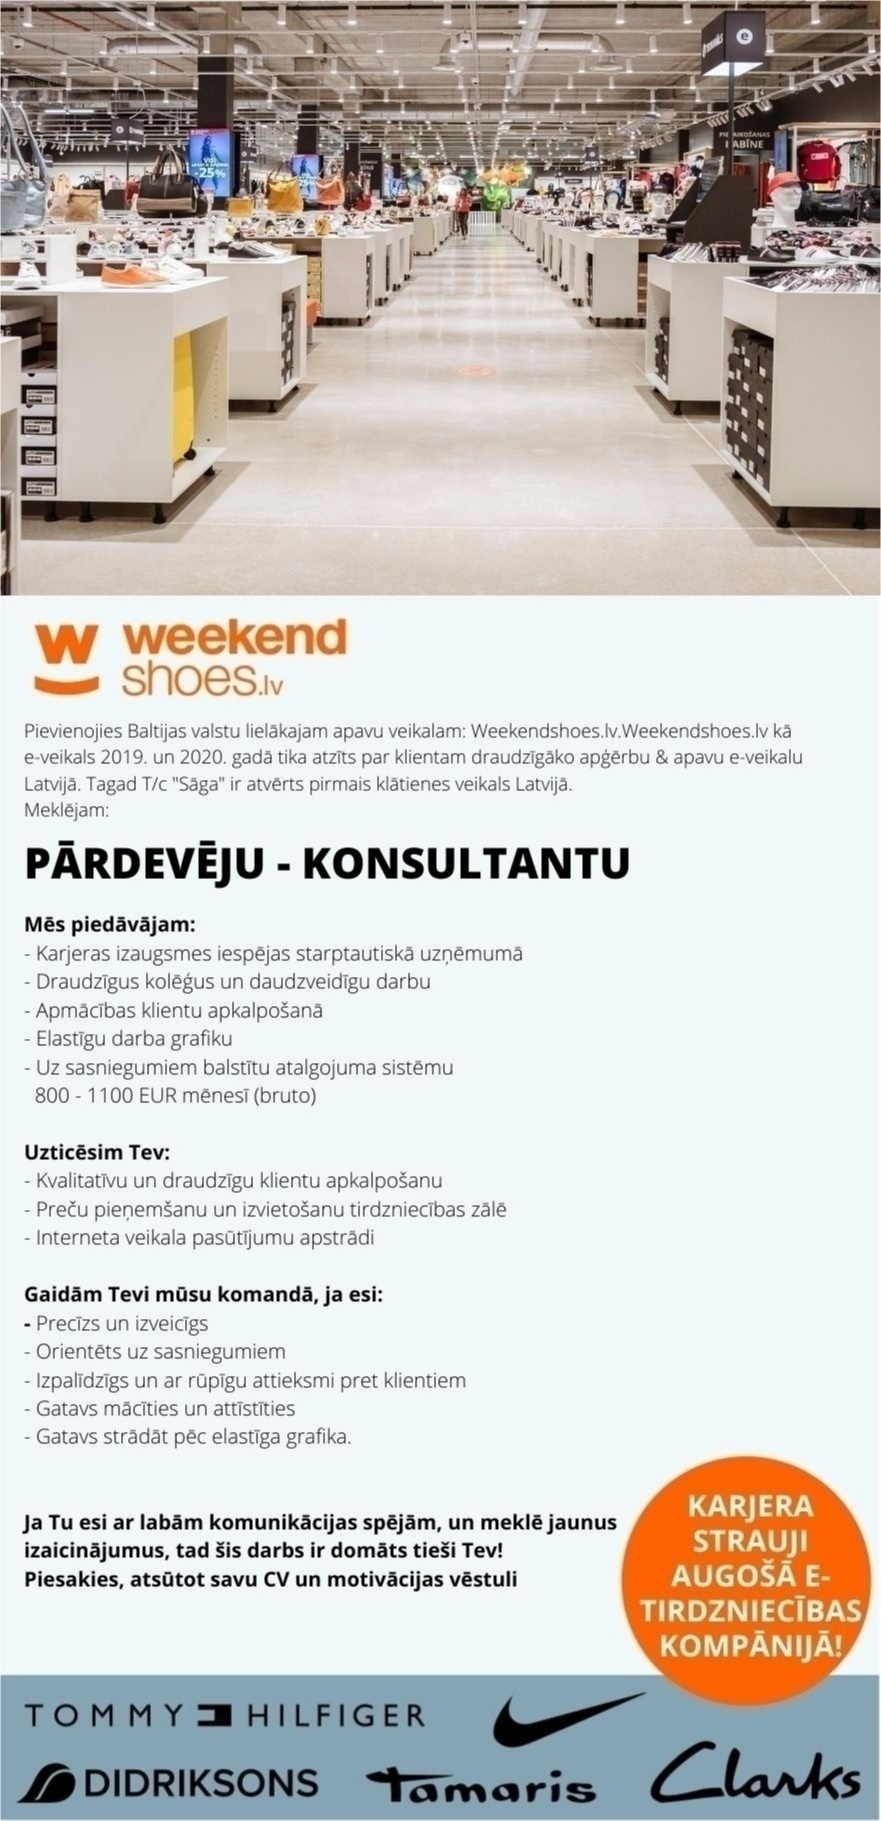 WEEKEND LATVIA, SIA Pārdošanas konsultants/-e - Lielākajam apavu veikalam Latvijā